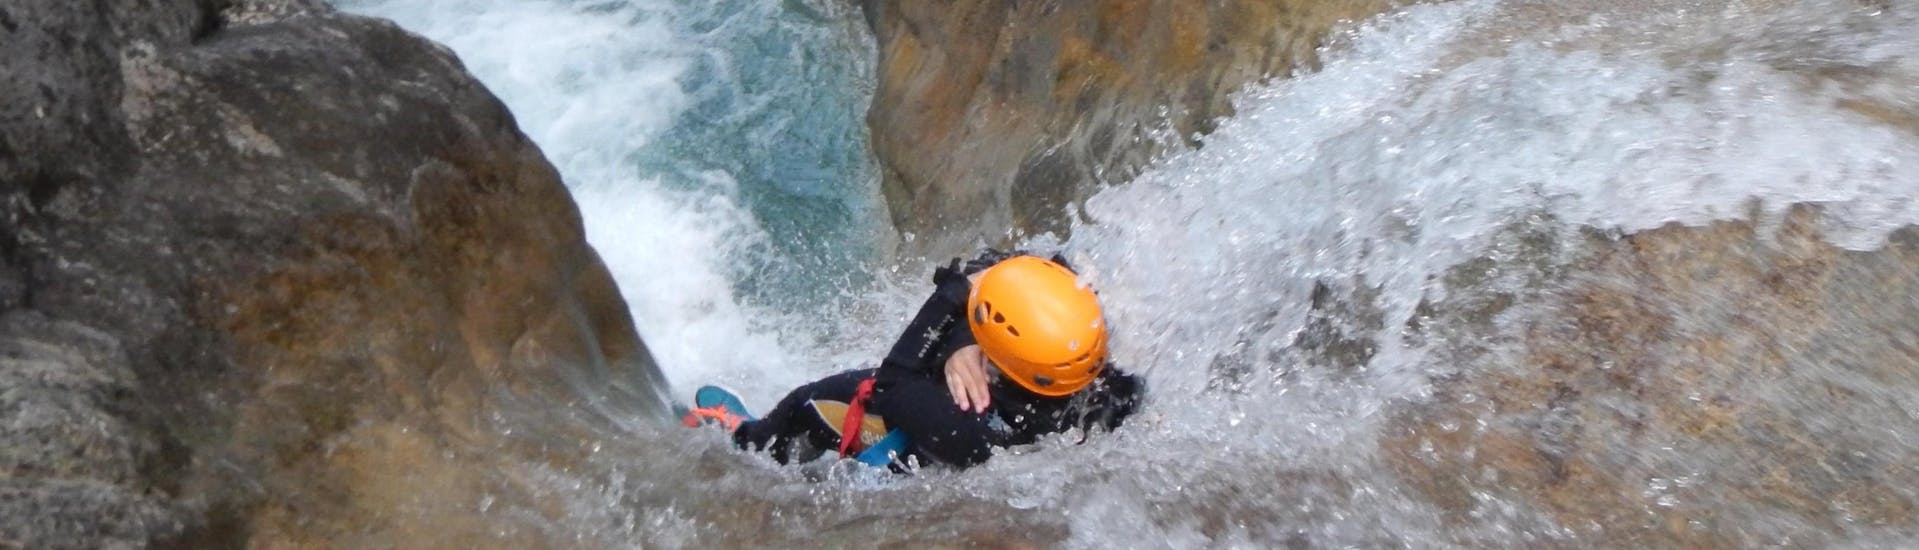 Een persoon glijdt van een waterval tijdens action canyoning bij de Weissensee in Karinthië met ARES Drautal Canyoning.